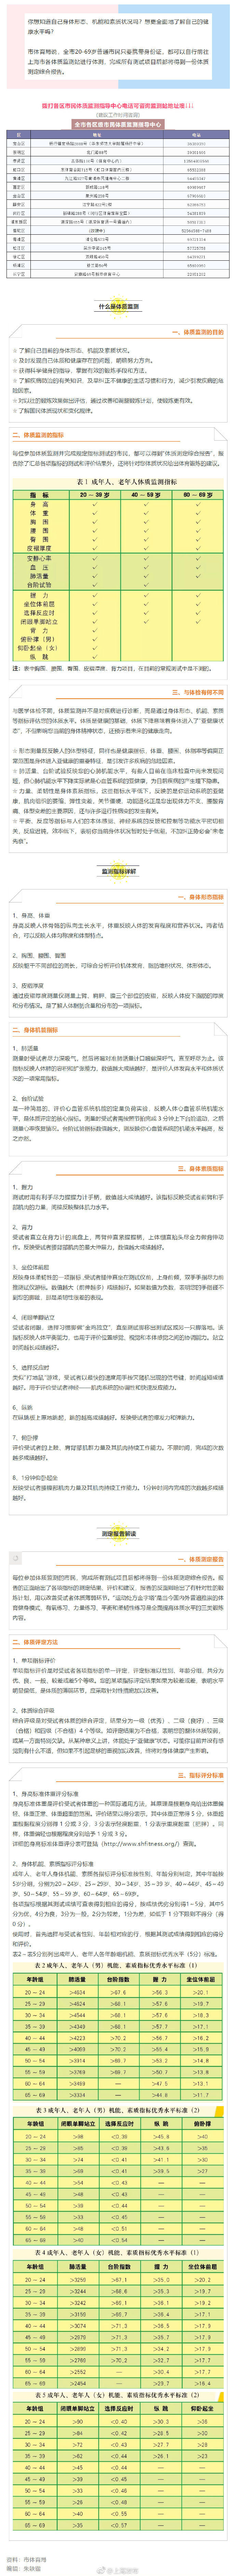 20-69岁上海市民凭身份证 可免费做体质监测